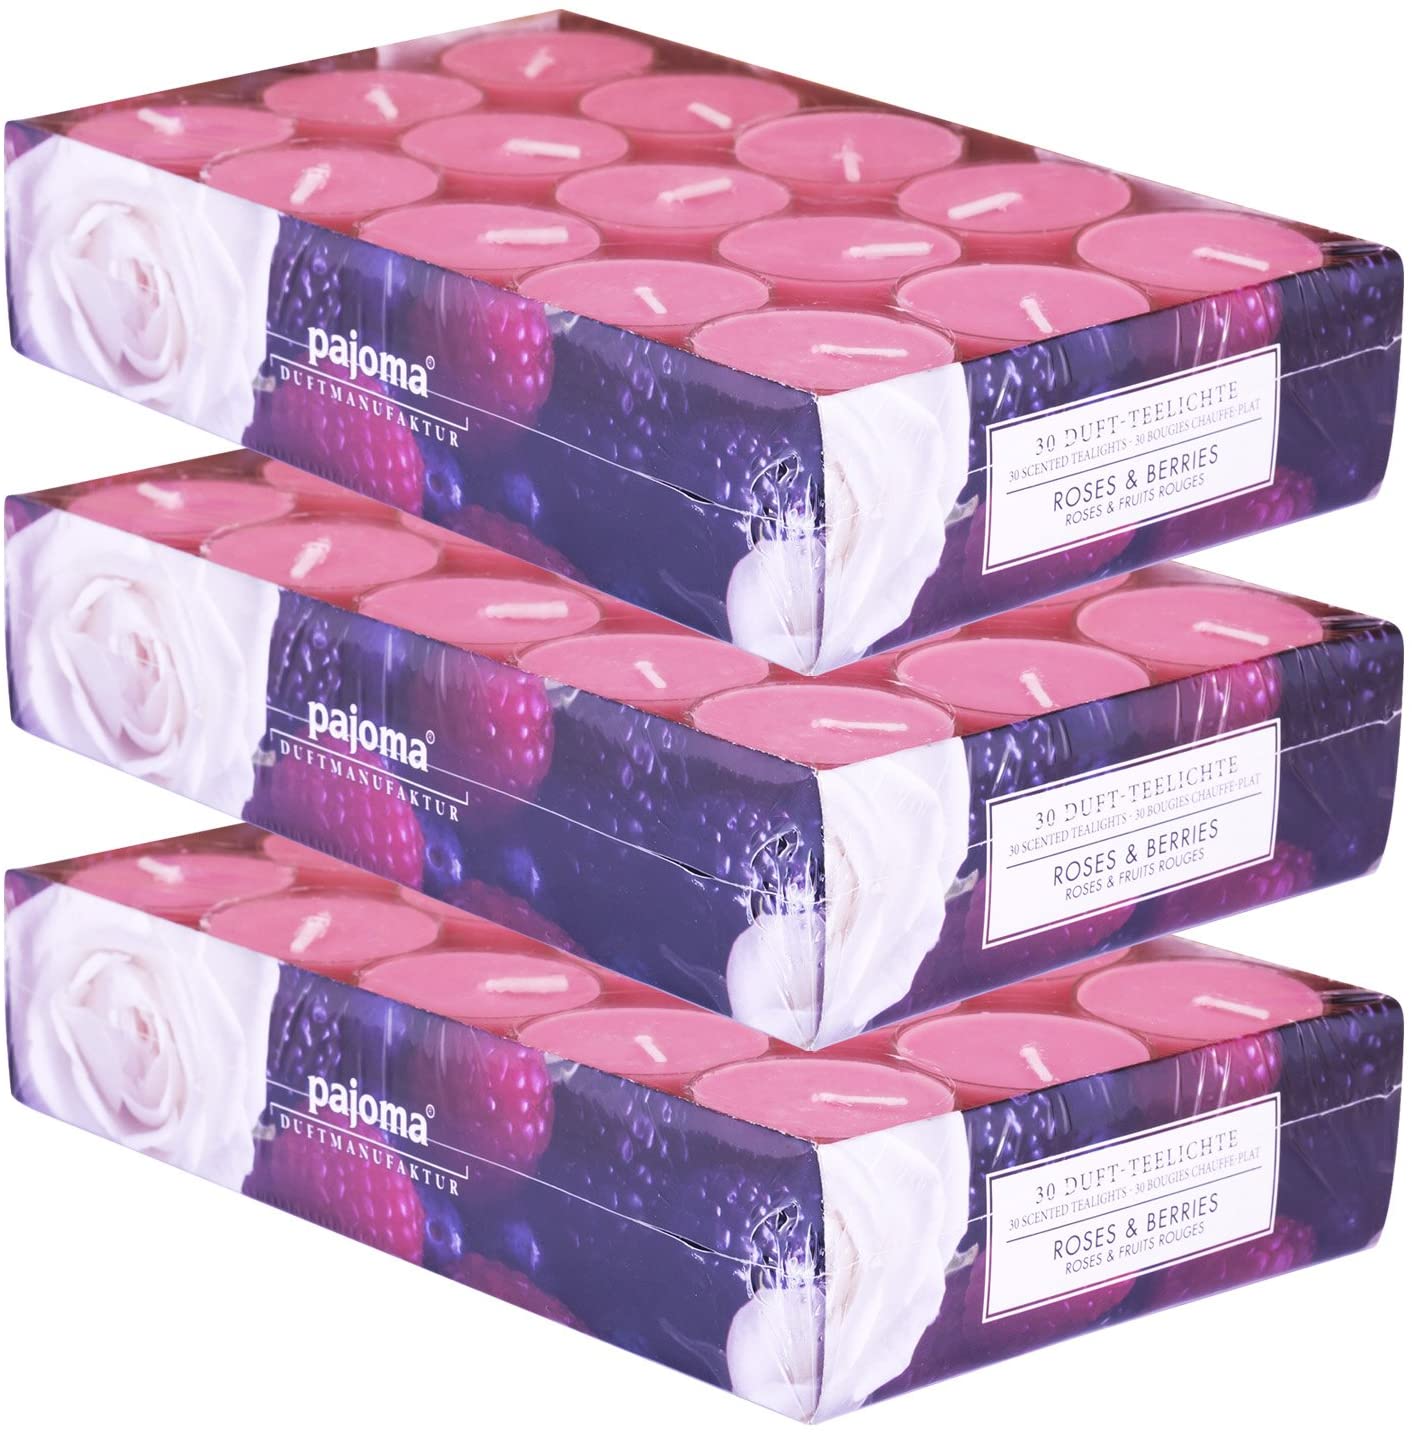 Pajoma Duftteelicht Roses & Berries, 90 Stück (3 X 30Er Pack) In Verschiede